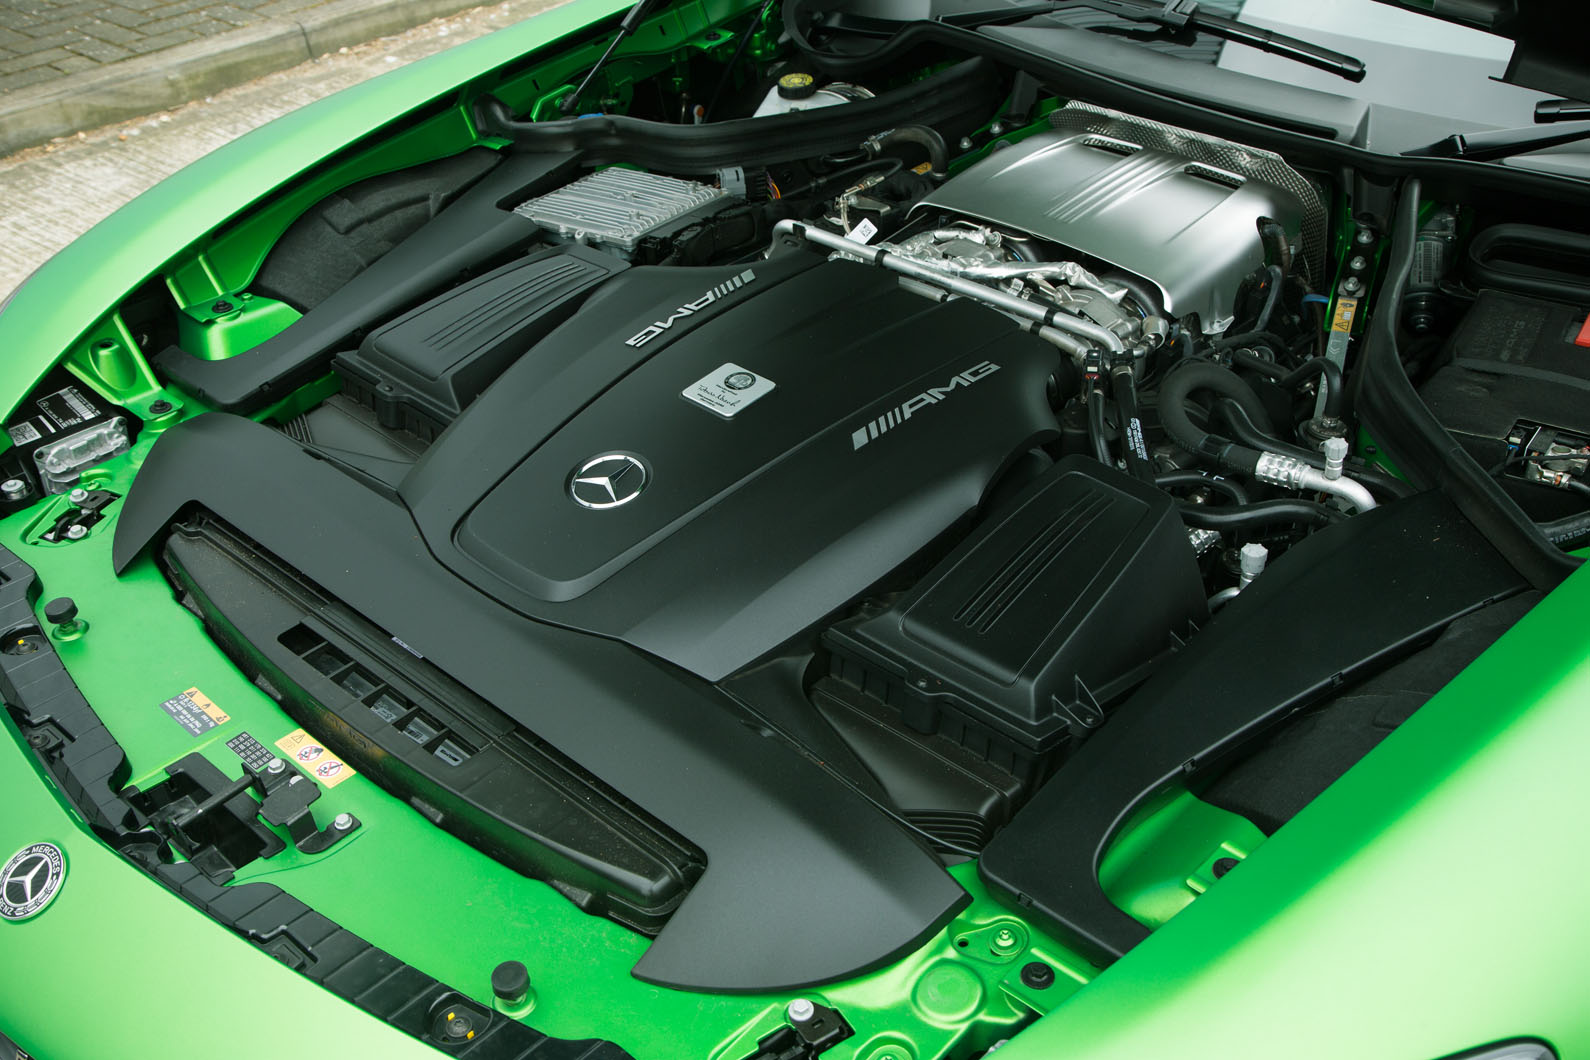 4.0-litre V8 Mercedes-AMG GT R petrol engine